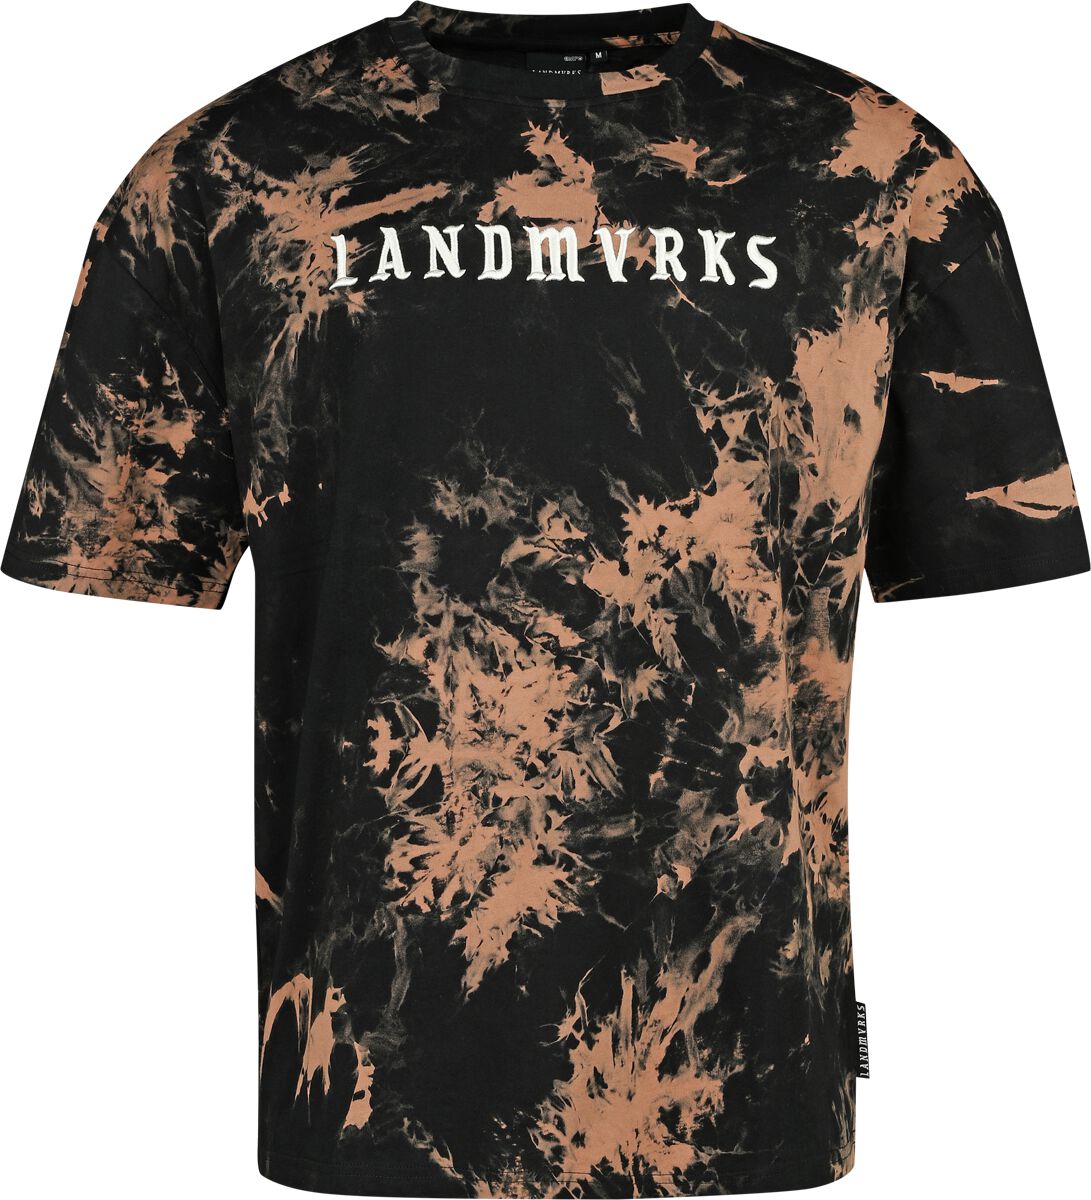 Landmvrks T-Shirt - EMP Signature Collection - S bis 3XL - für Männer - Größe M - schwarz/braun  - EMP exklusives Merchandise! von Landmvrks